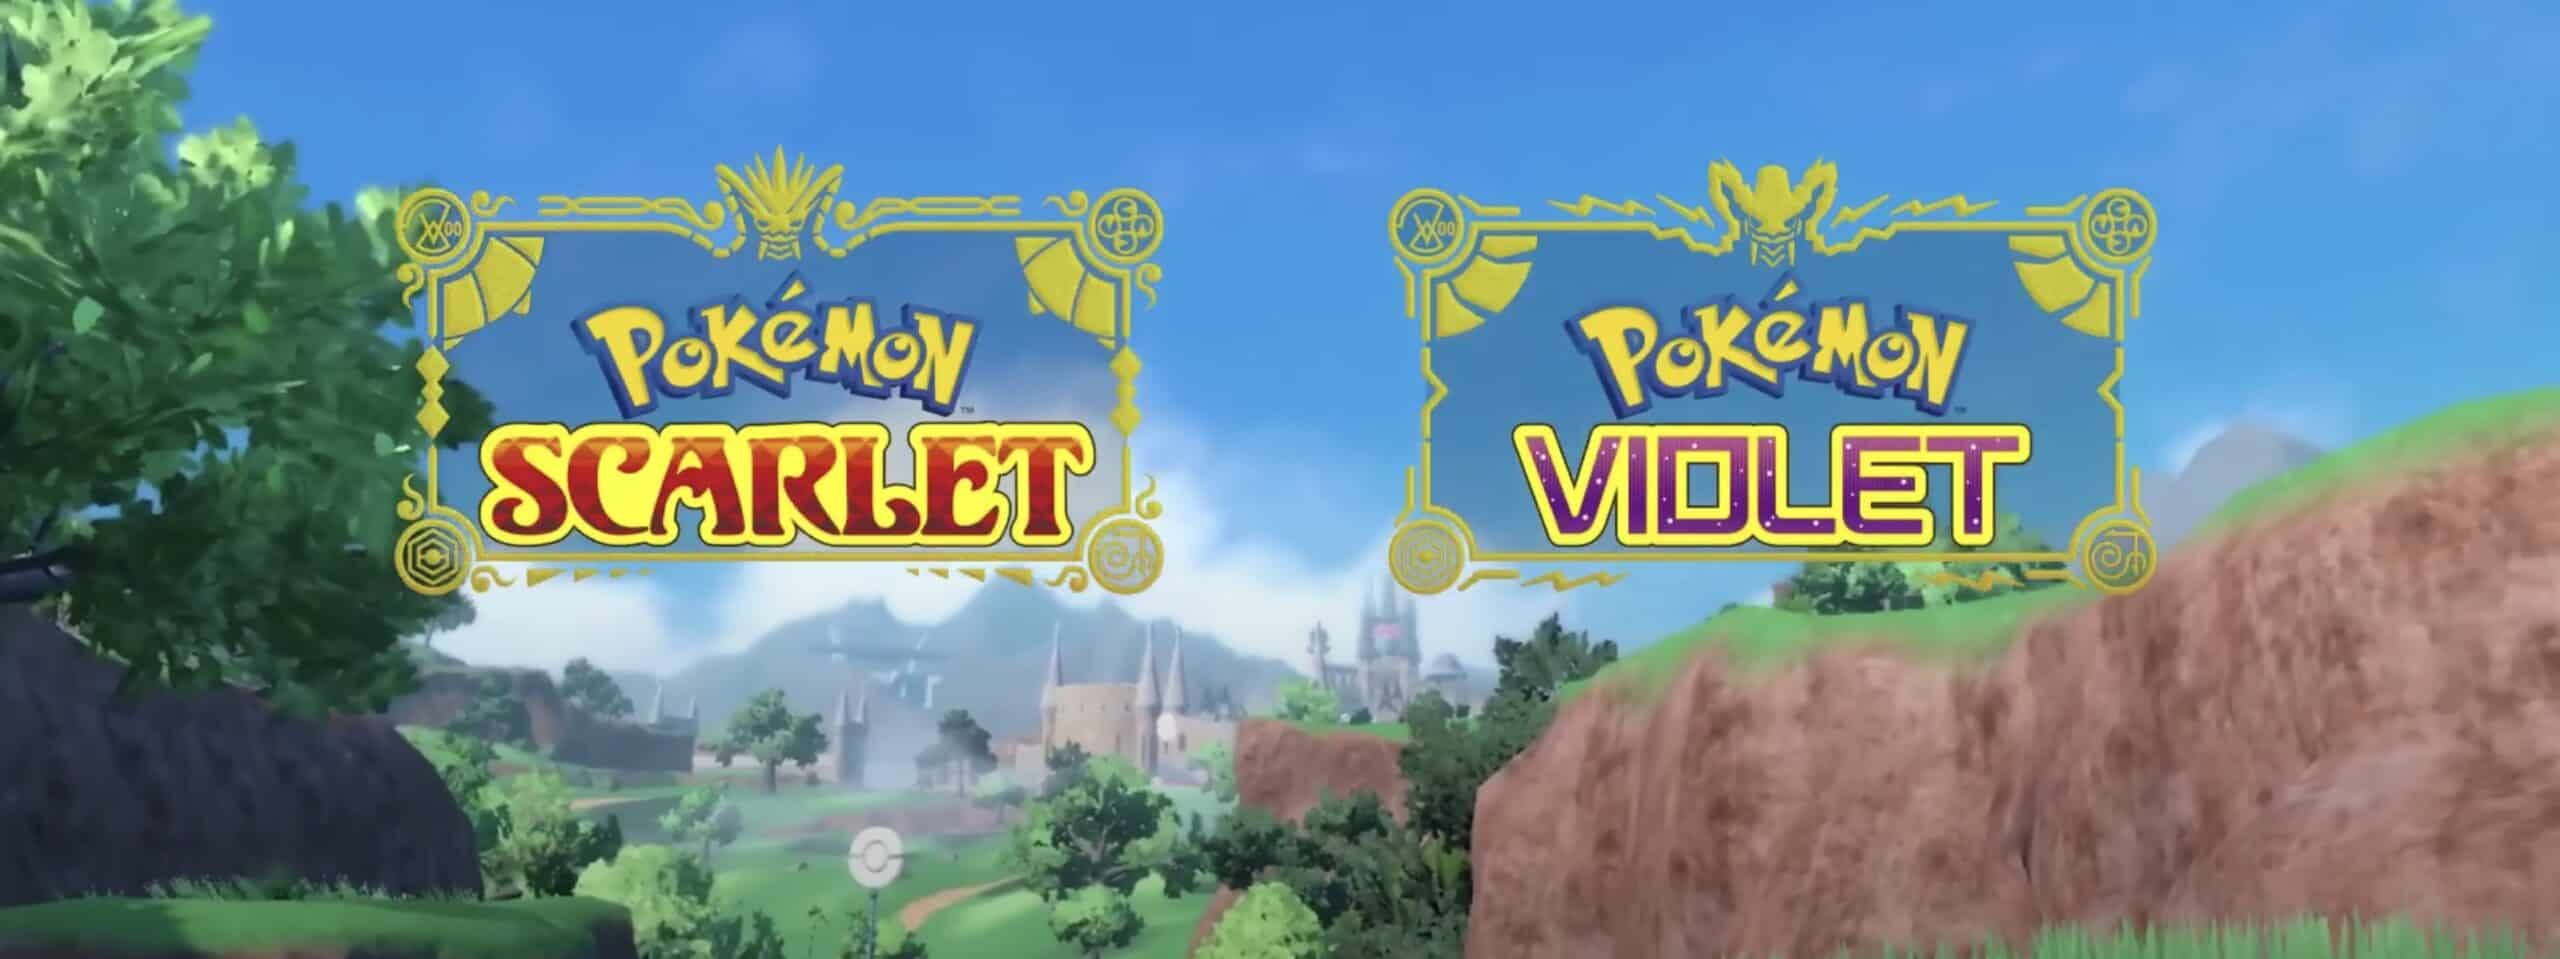 10 Best Pokémon From the Pokémon Scarlet and Violet Pokédex